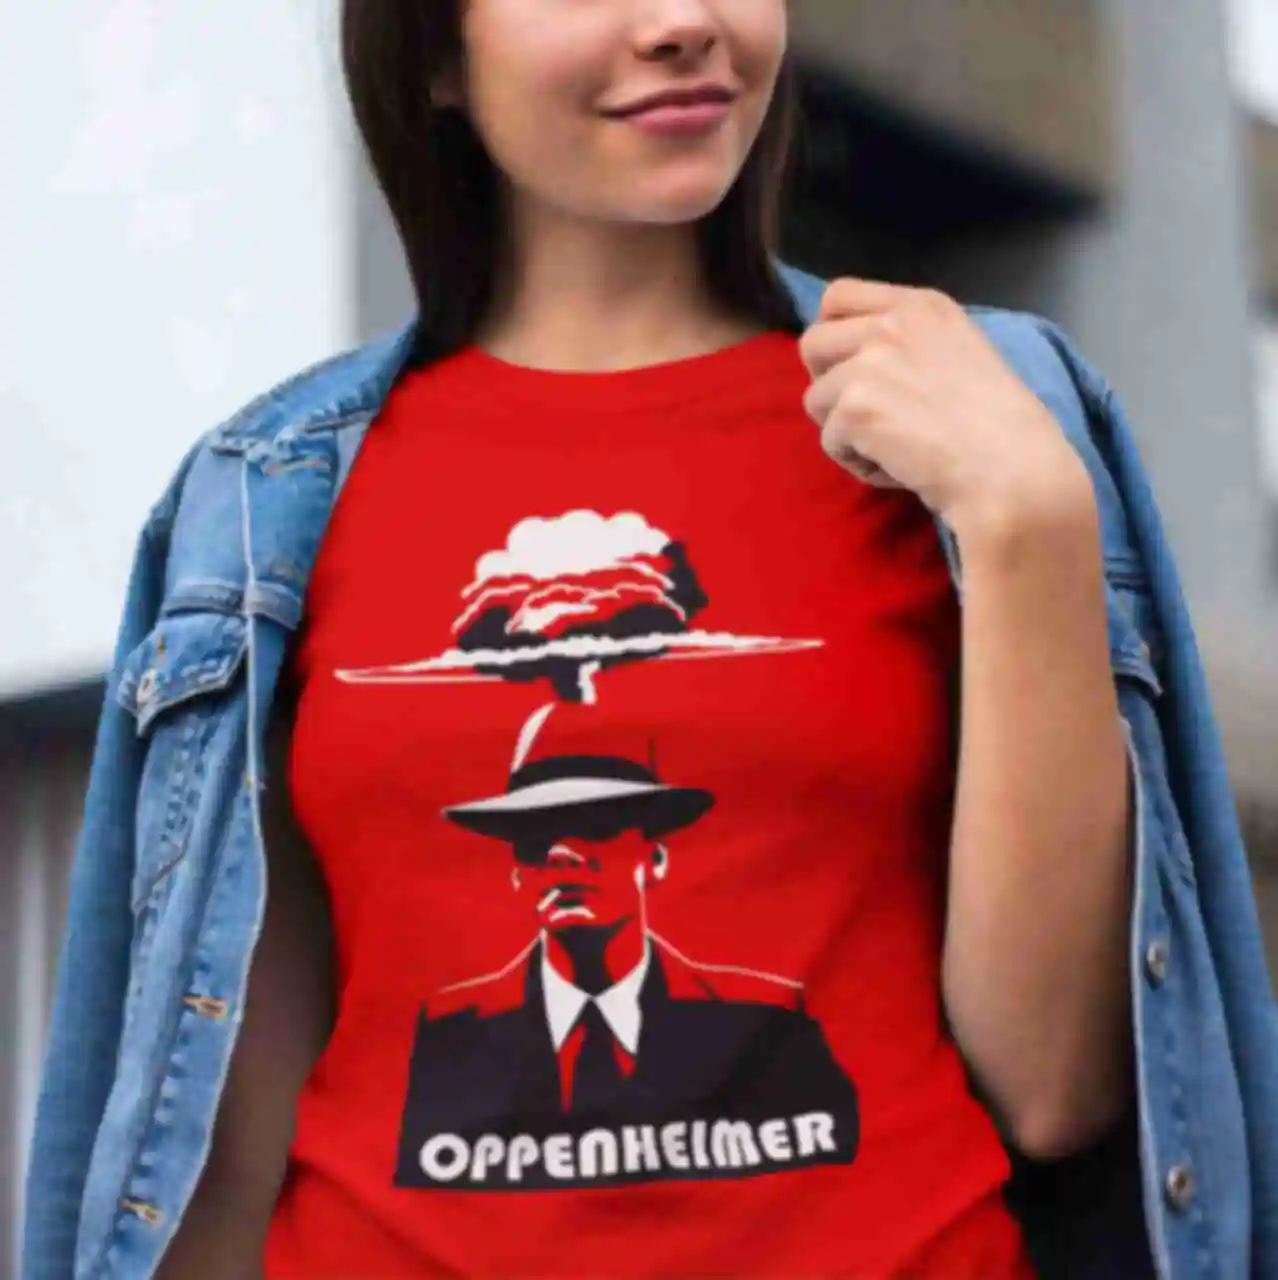 Футболка №4 • Oppenheimer ⦁ Мерч Оппенгеймер ⦁ Одежда в стиле фильма с Киллианом Мёрфи